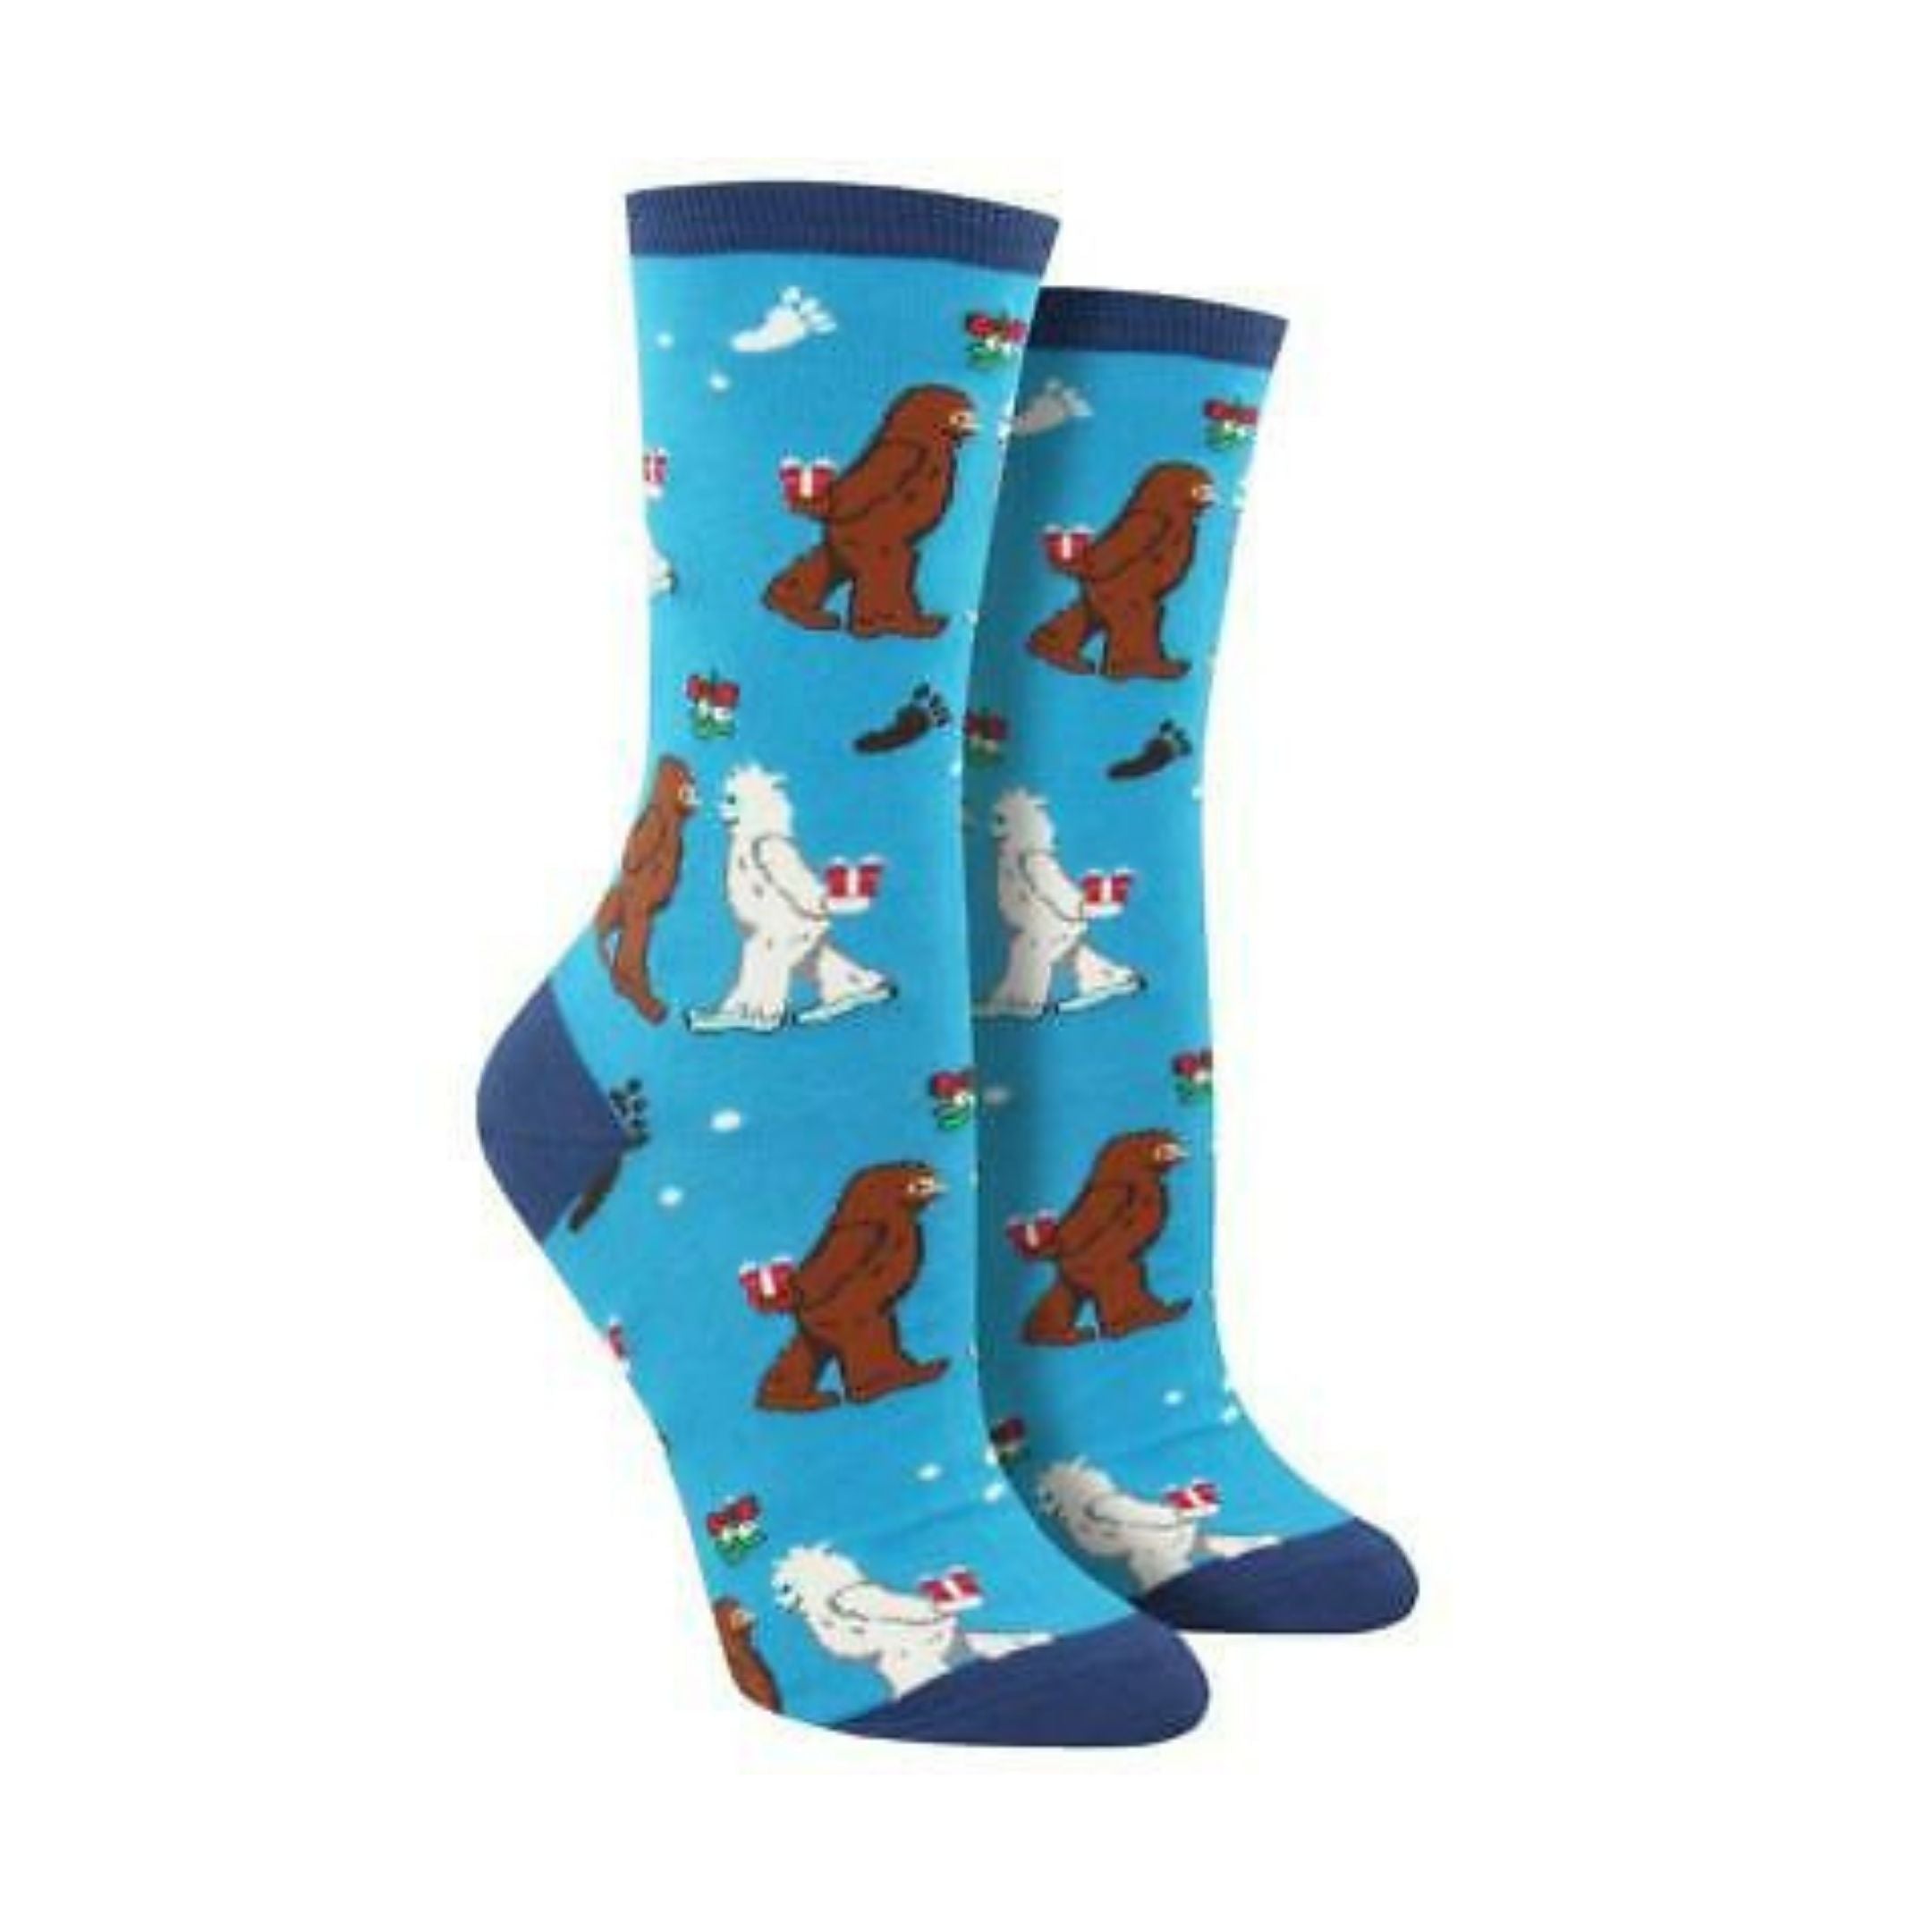 Light blue socks with yetis kissing under the mistle toe